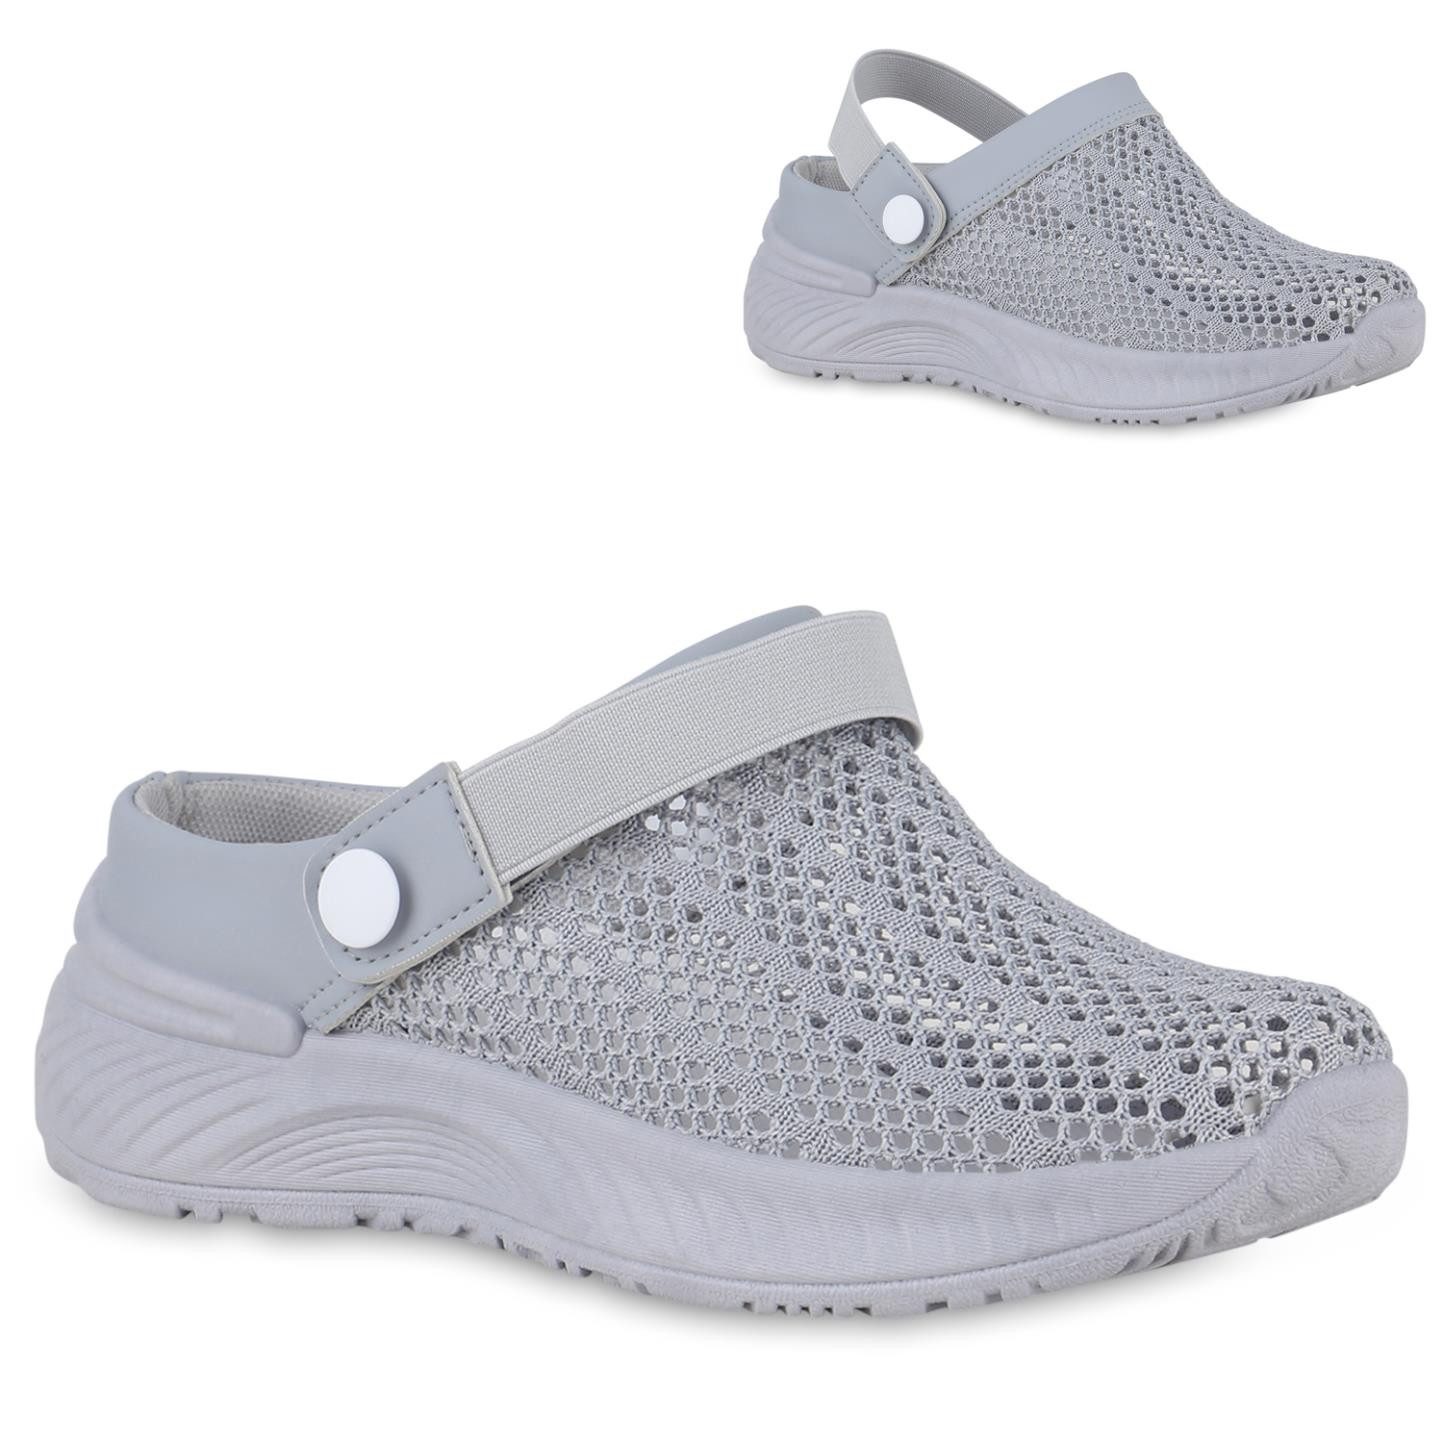 VAN HILL 841241 Slip-On Sneaker Schuhe